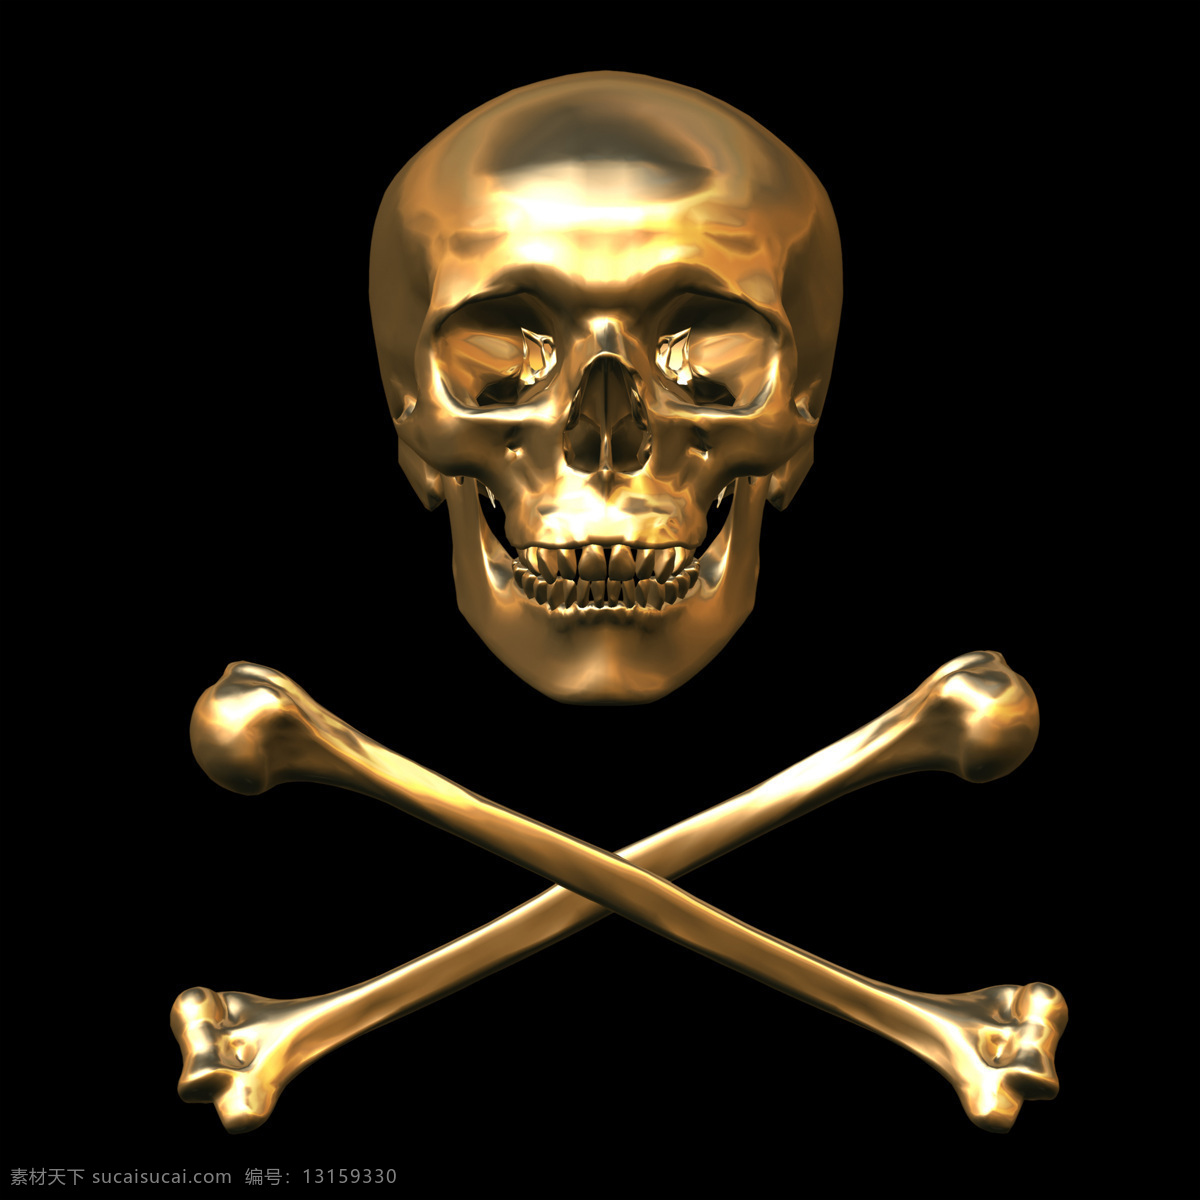 黄金 骷髅 头 大图 文化 艺术 创意 恐怖 设计素材 高清设计大图 骷髅头 黄金骷髅头 海盗 骨头 金光闪闪 人体器官图 人物图片